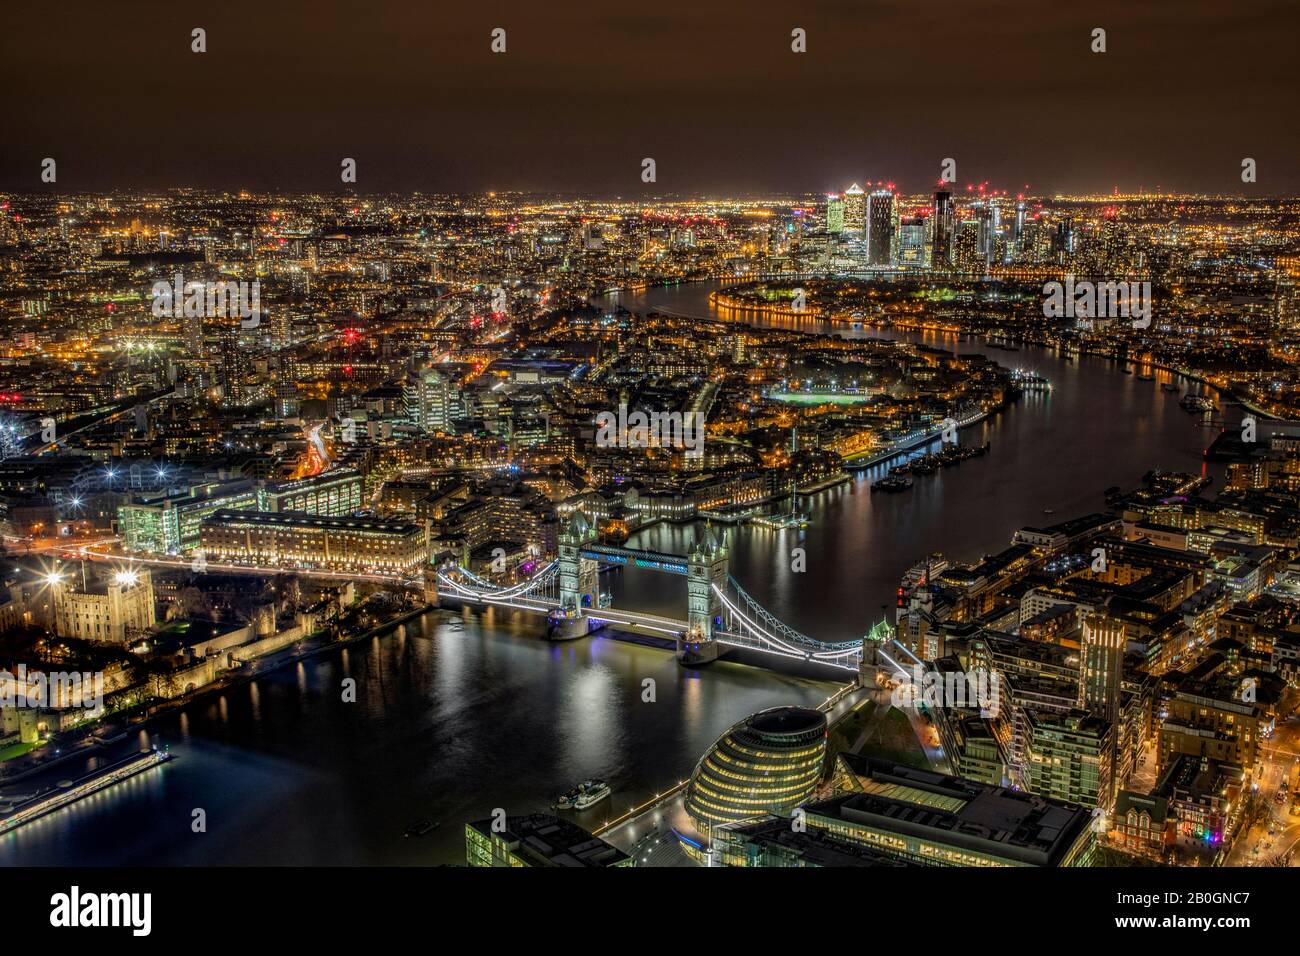 Vue aérienne de Tower Bridge et de Londres après la tombée de la nuit montrant le quai des canaries et la ville le long de la Tamise Banque D'Images